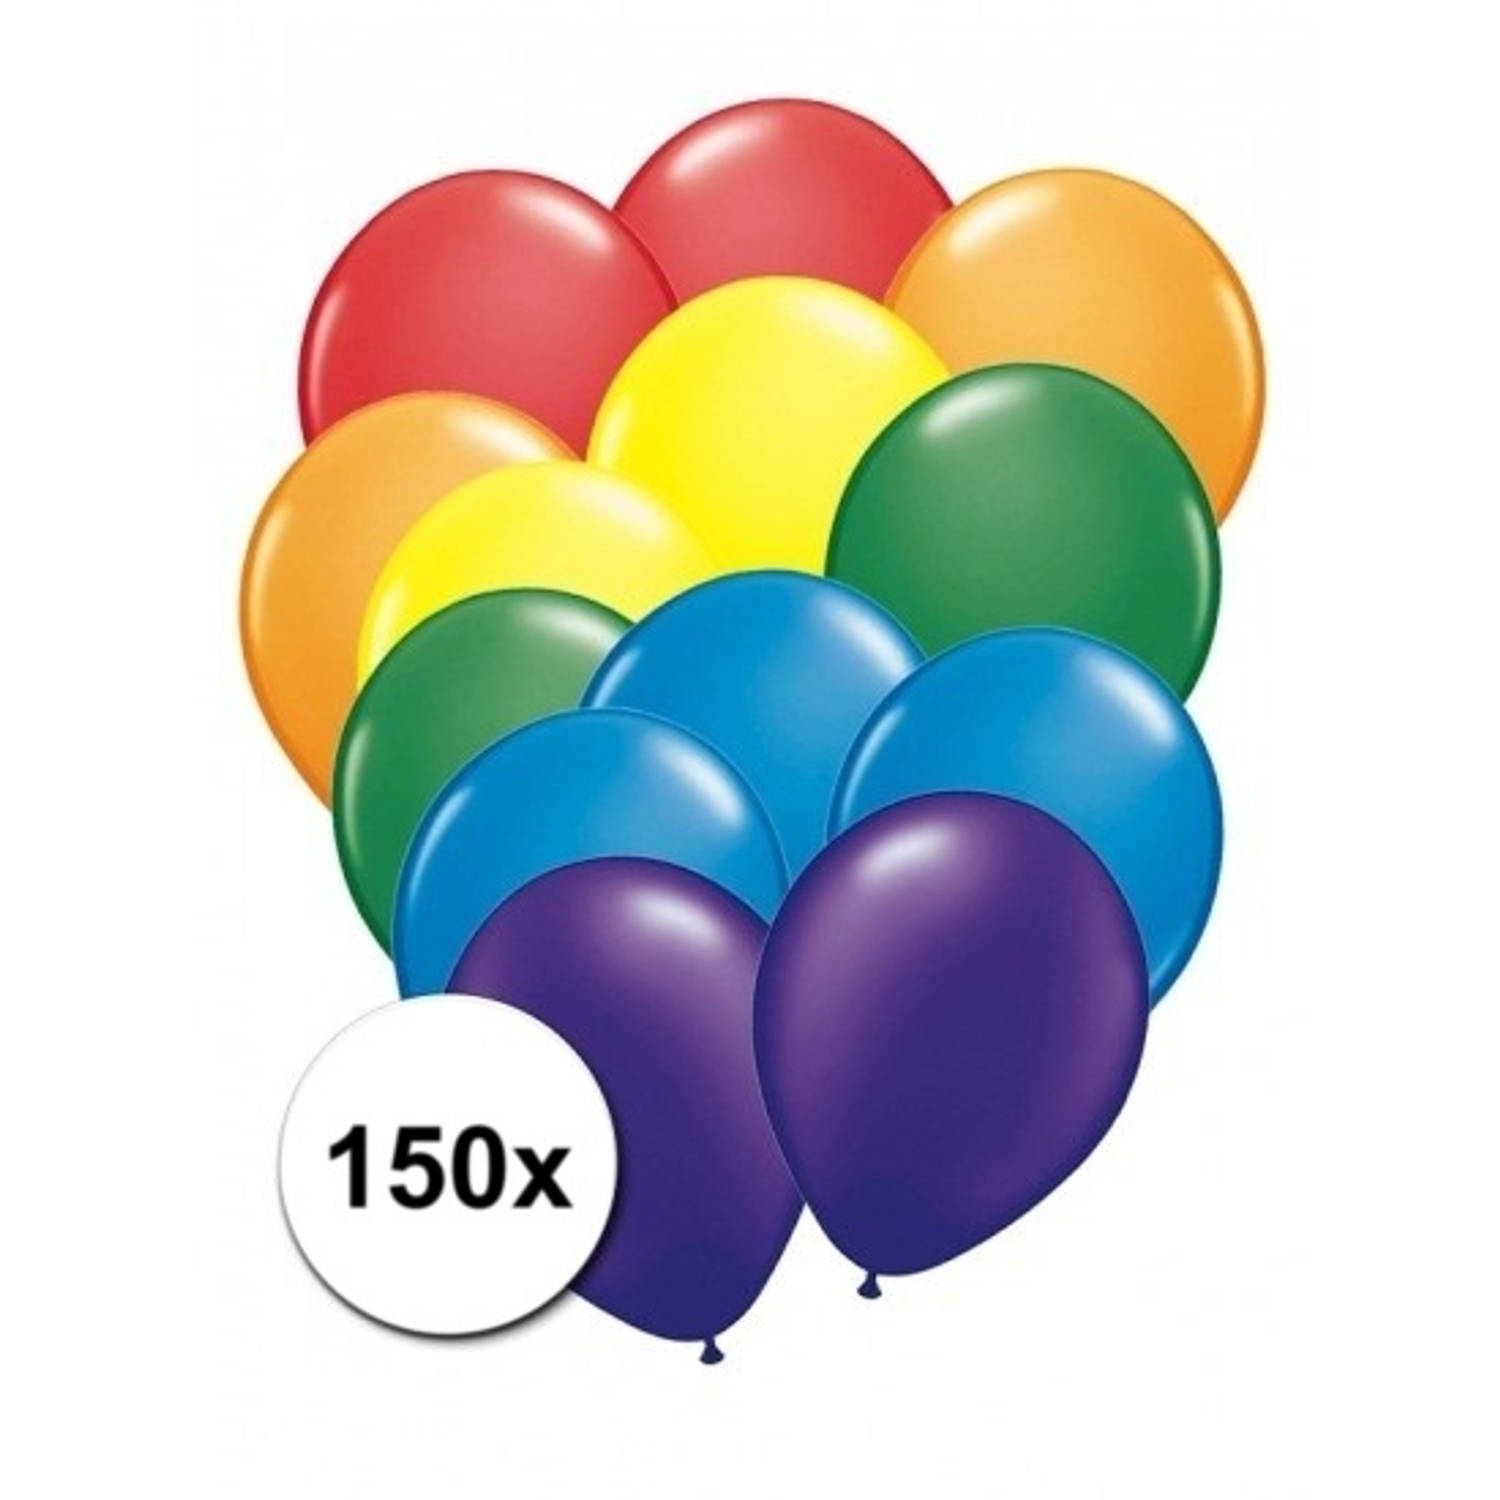 150 stuks regenboog ballonnen - Ballonnen